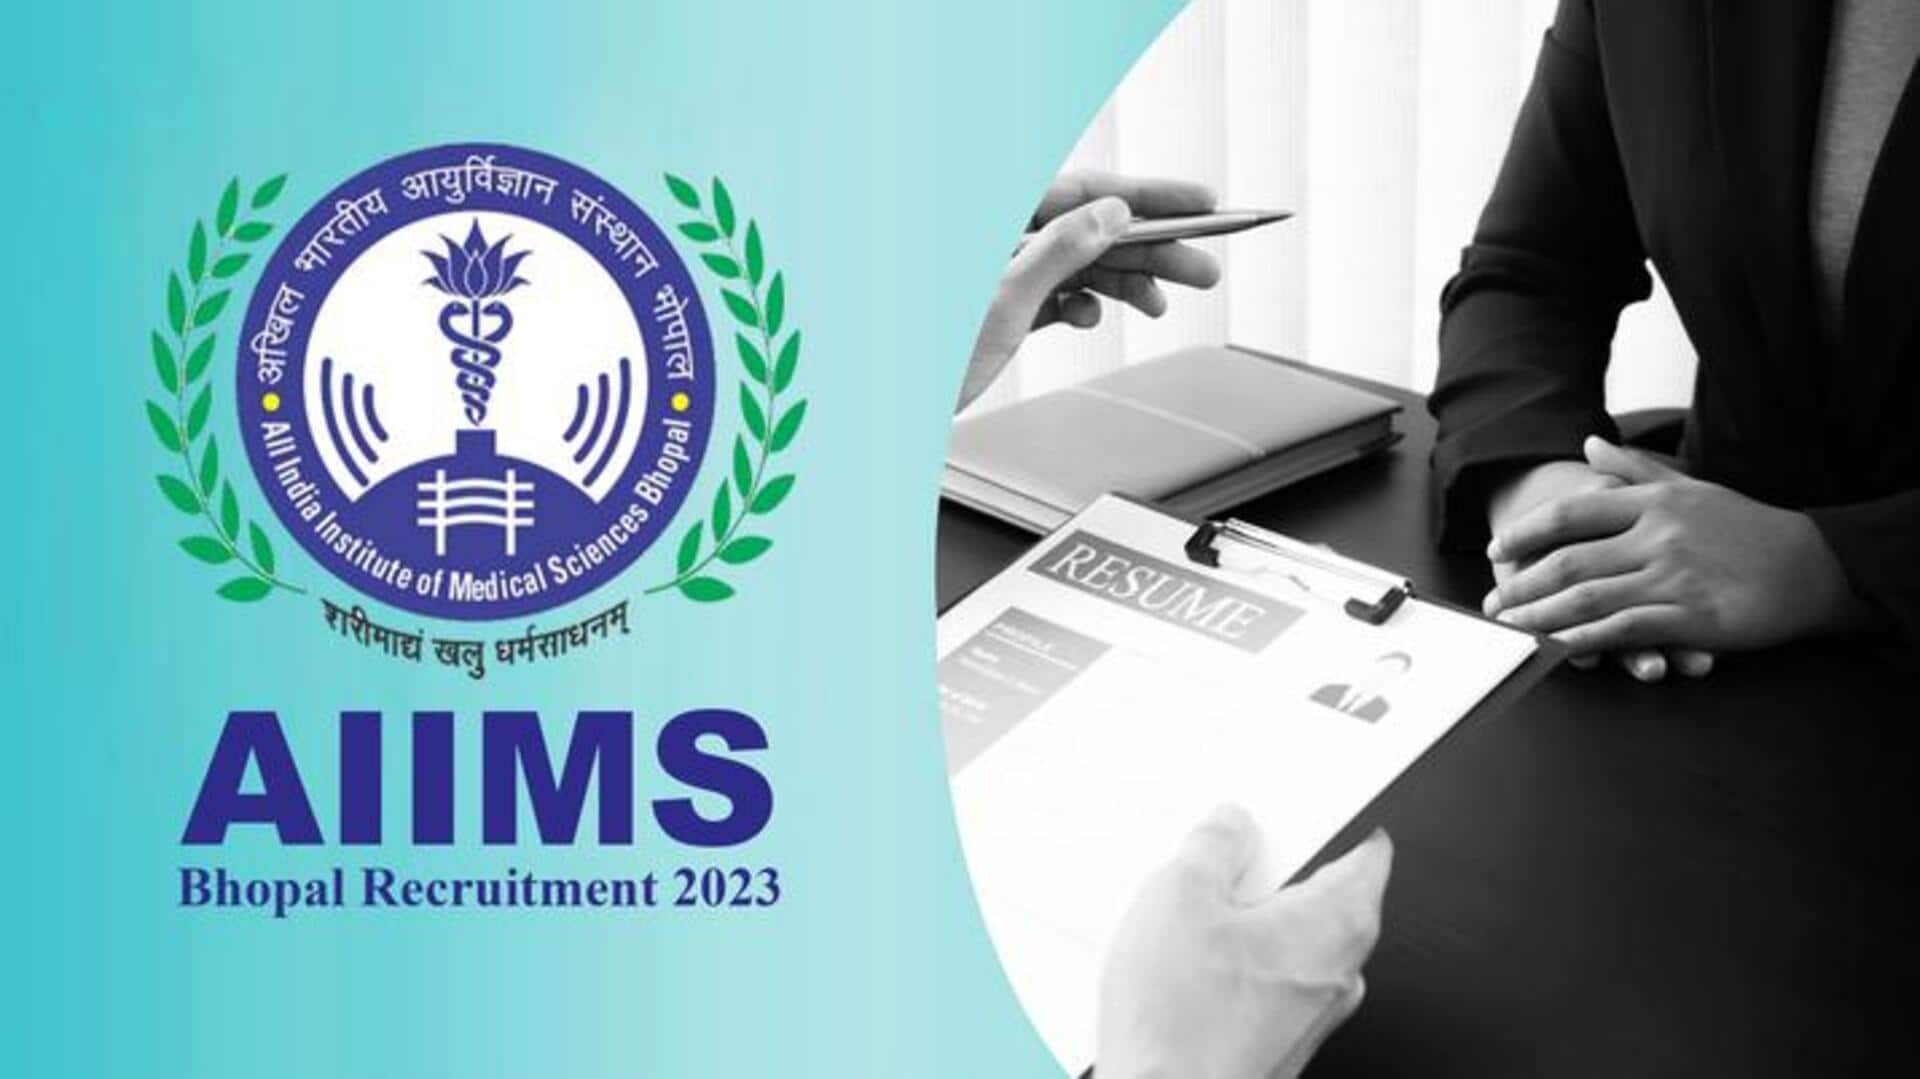 AIIMS भोपाल में निकली 233 पदों पर भर्ती, 6 अक्टूबर से करें आवेदन